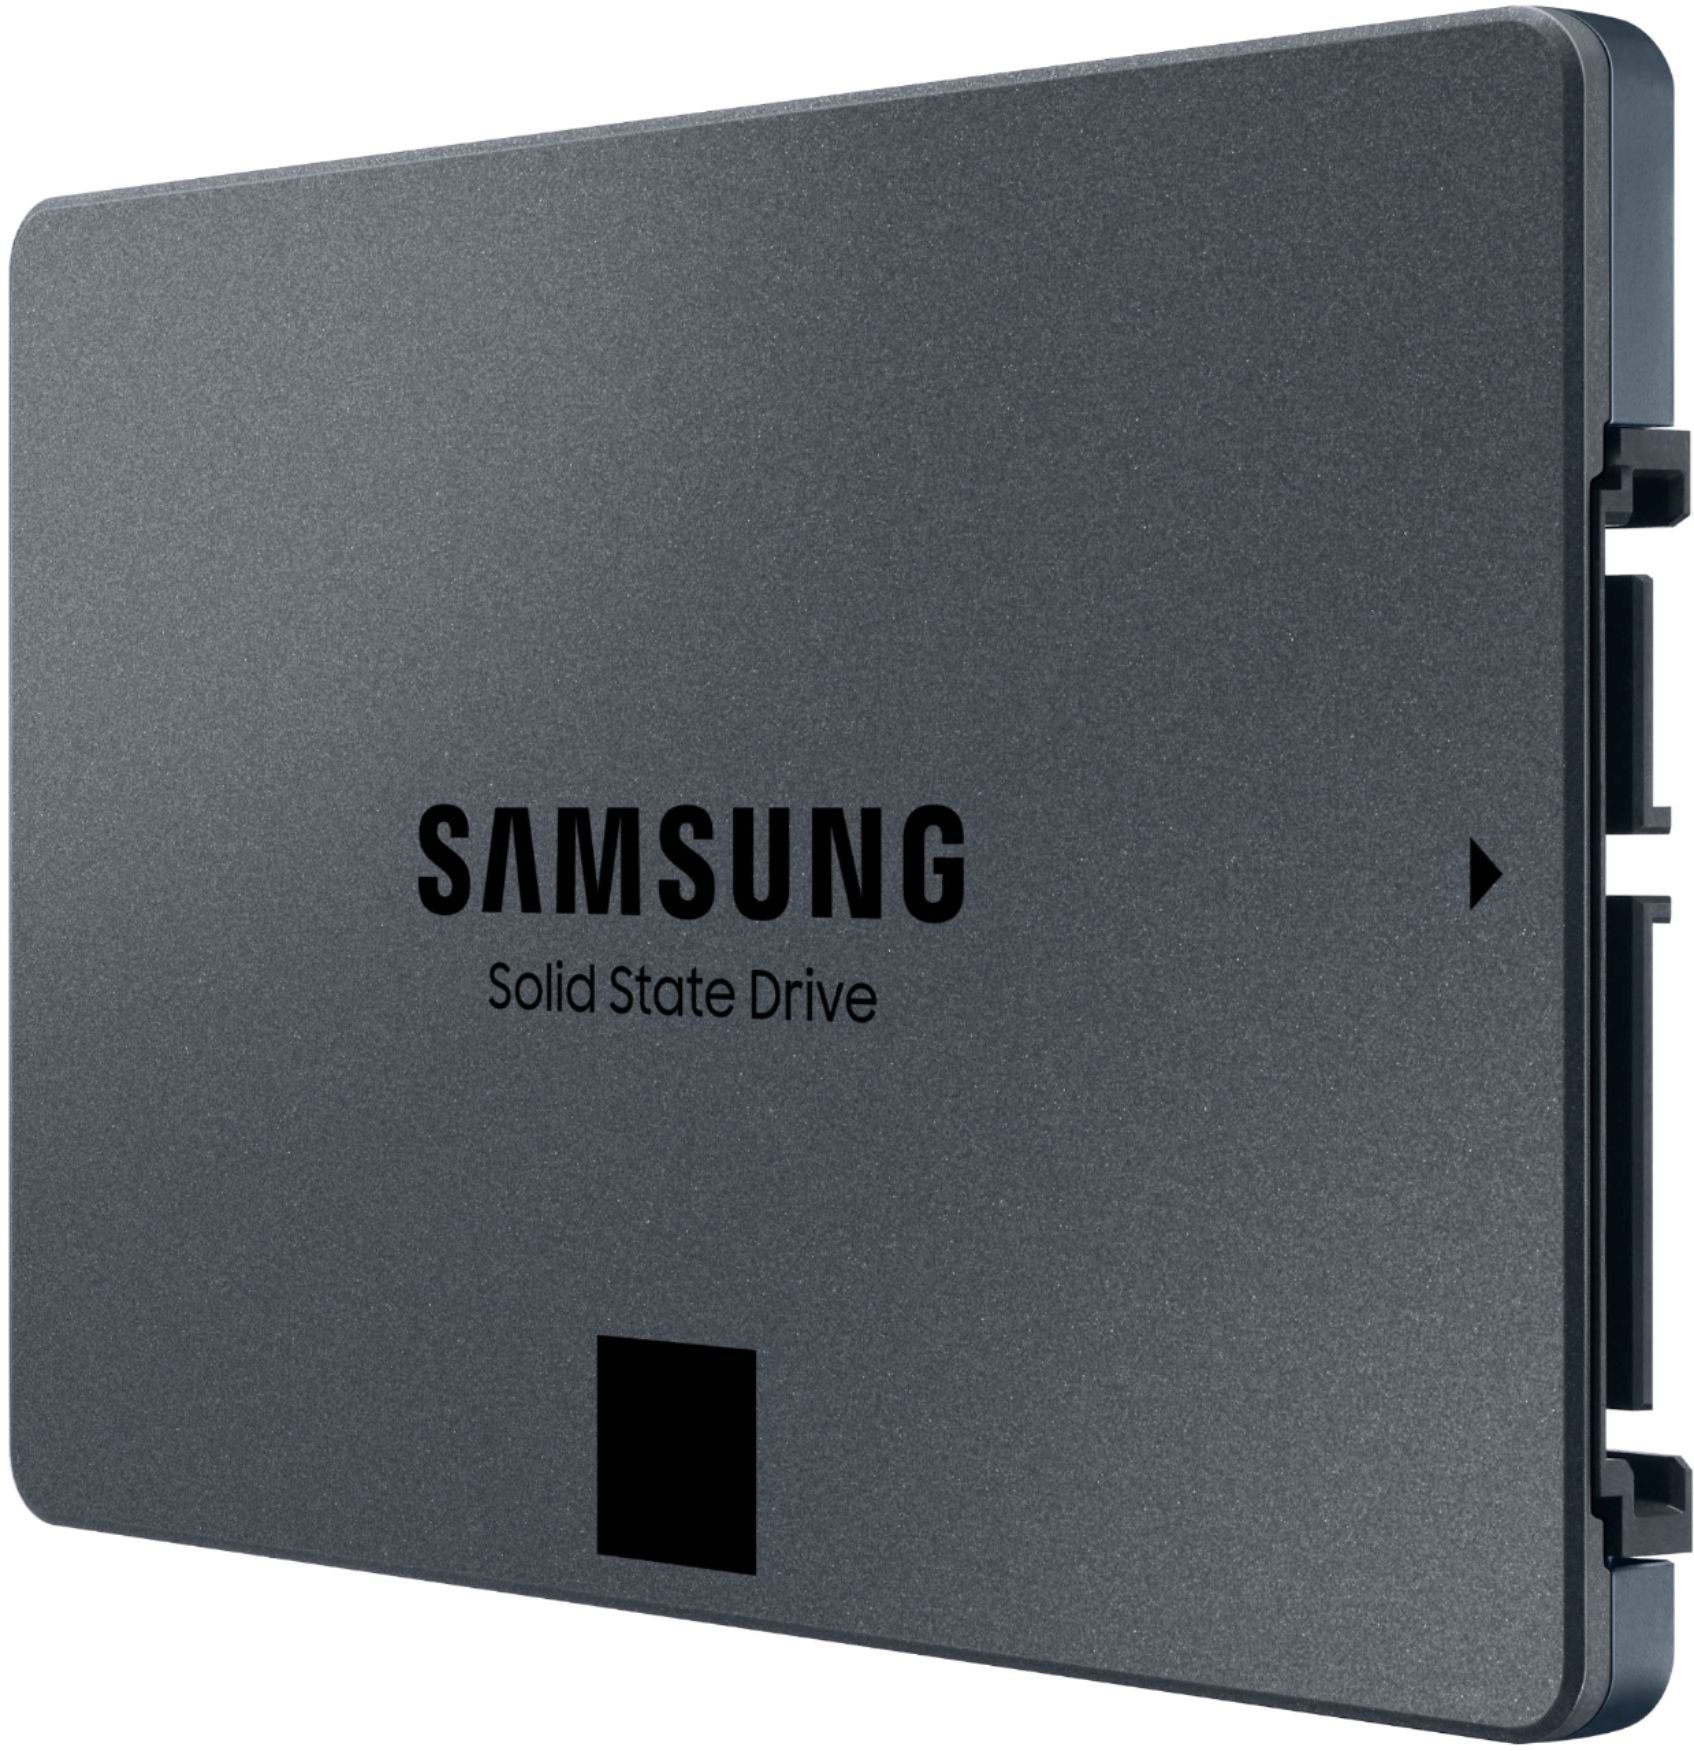 Samsung 870 QVO 1TB Internal SSD SATA MZ-77Q1T0B/AM - Best Buy